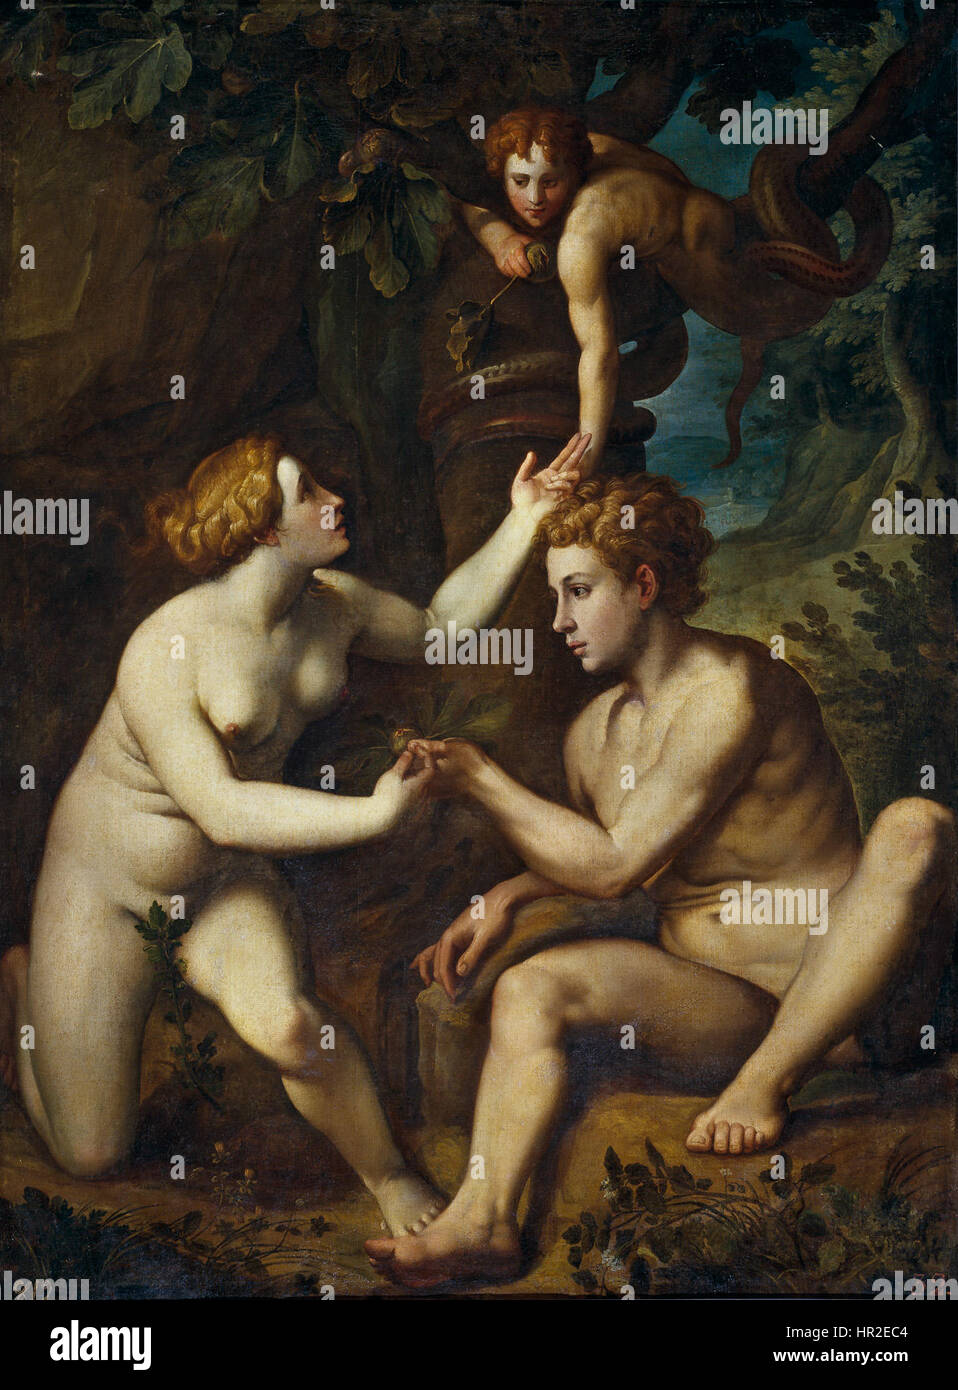 Pietro Facchetti - Adamo ed Eva ricevono dal frutto proibito Foto de stock